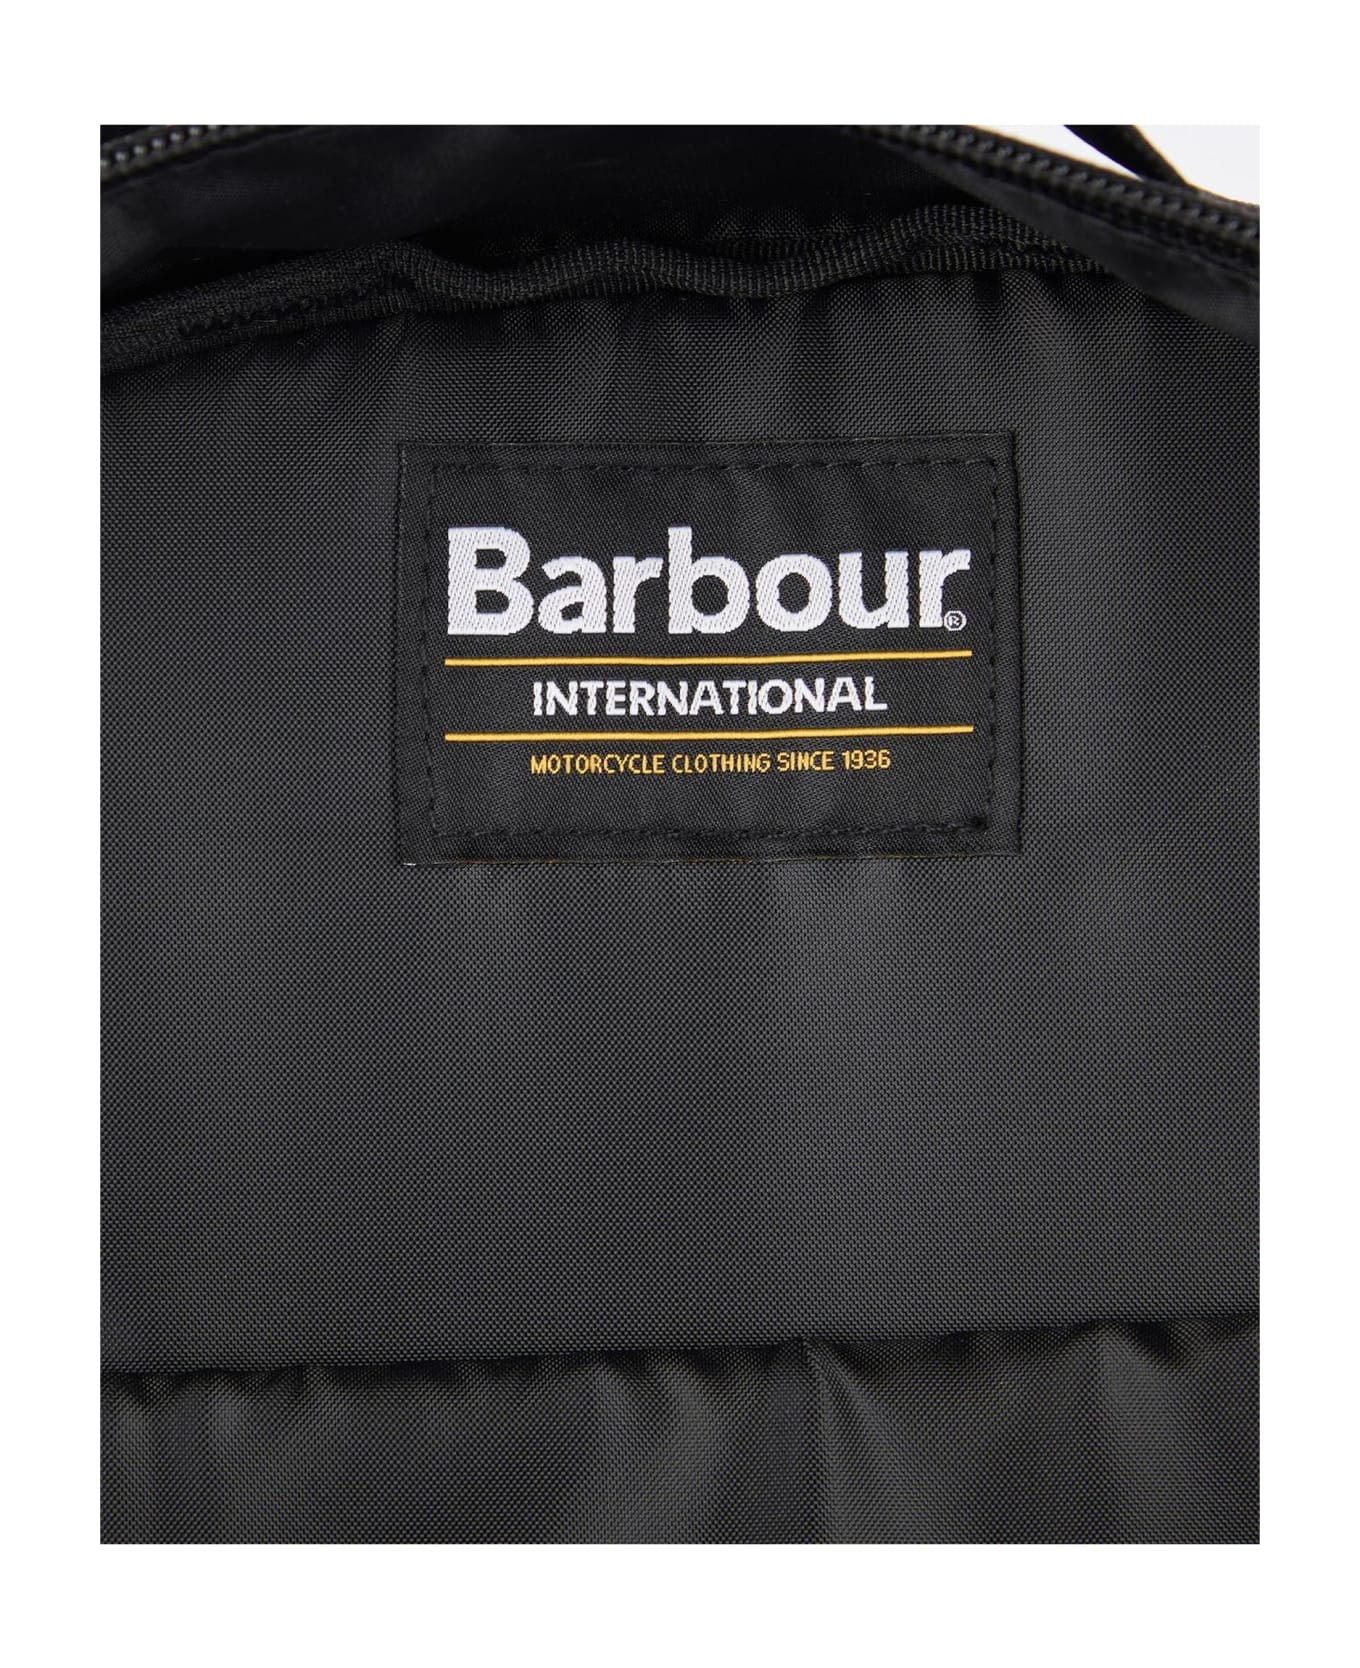 Barbour International Knockhill Backpack - Black バックパック